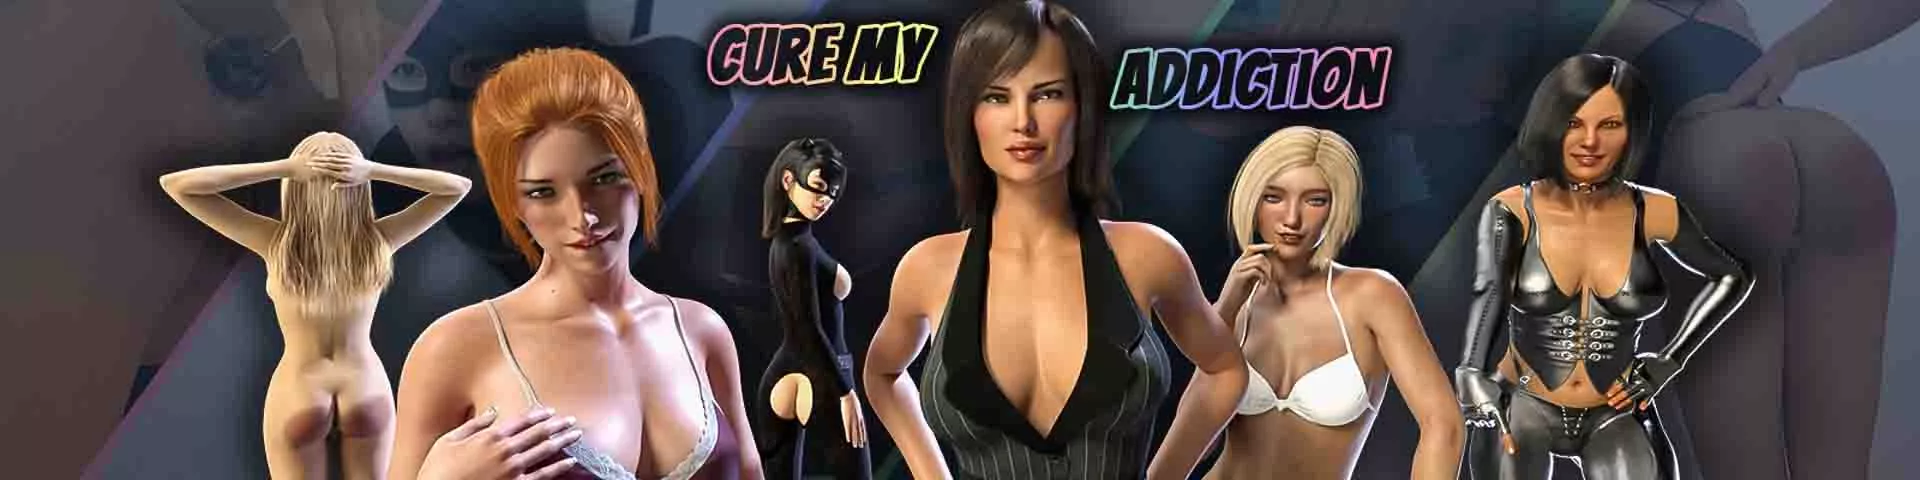 Cure My Addiction Секс-игра для взрослых